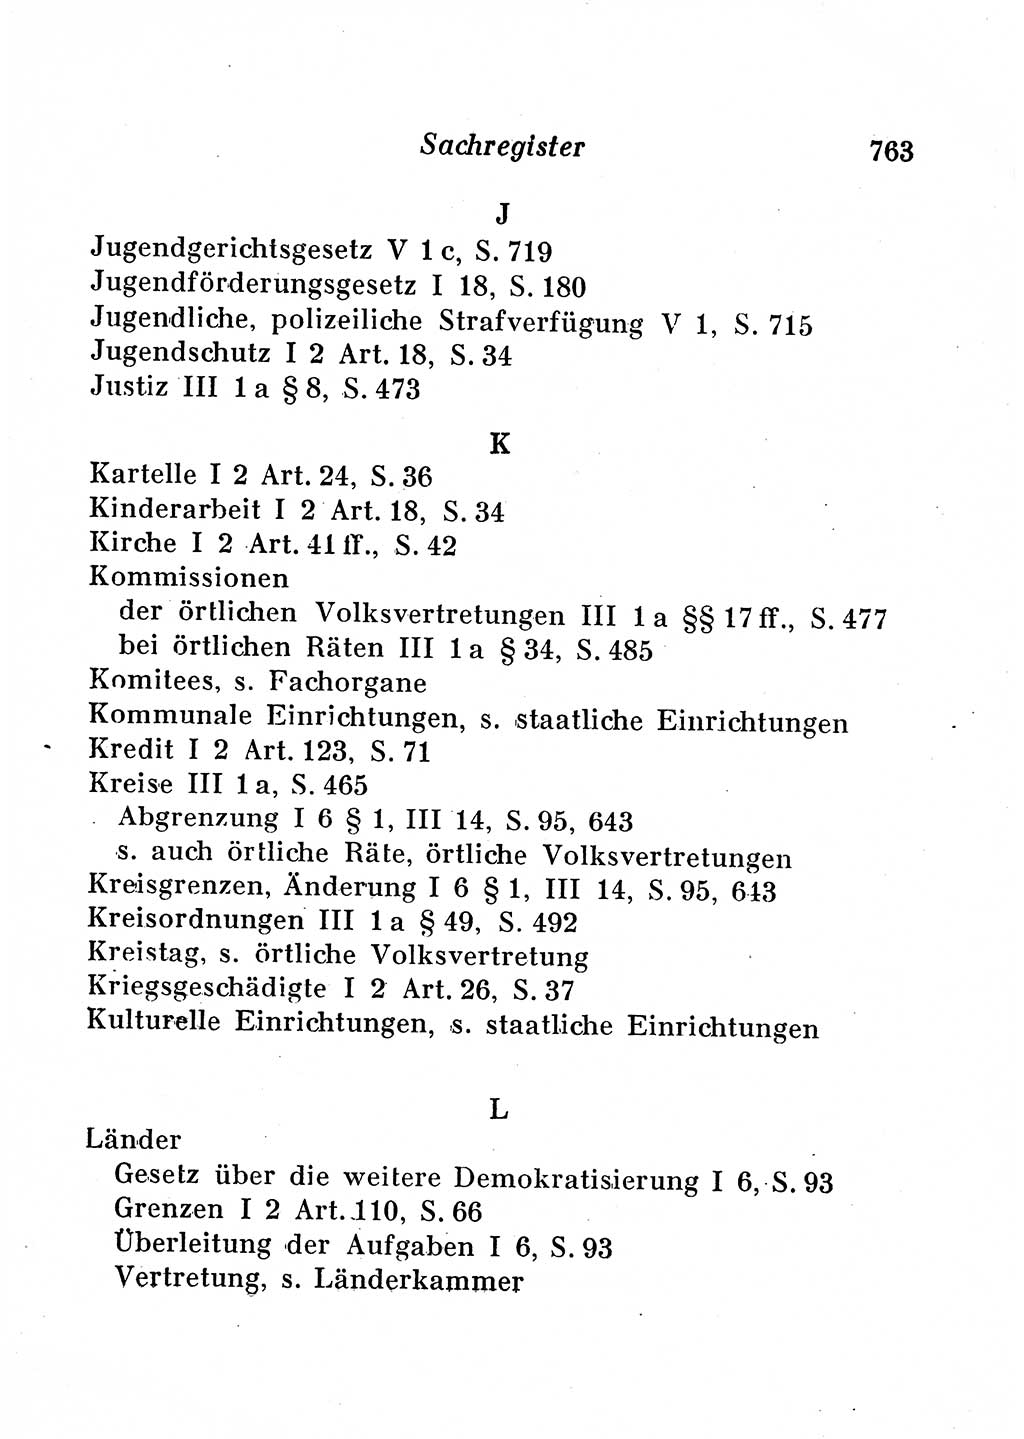 Staats- und verwaltungsrechtliche Gesetze der Deutschen Demokratischen Republik (DDR) 1958, Seite 763 (StVerwR Ges. DDR 1958, S. 763)